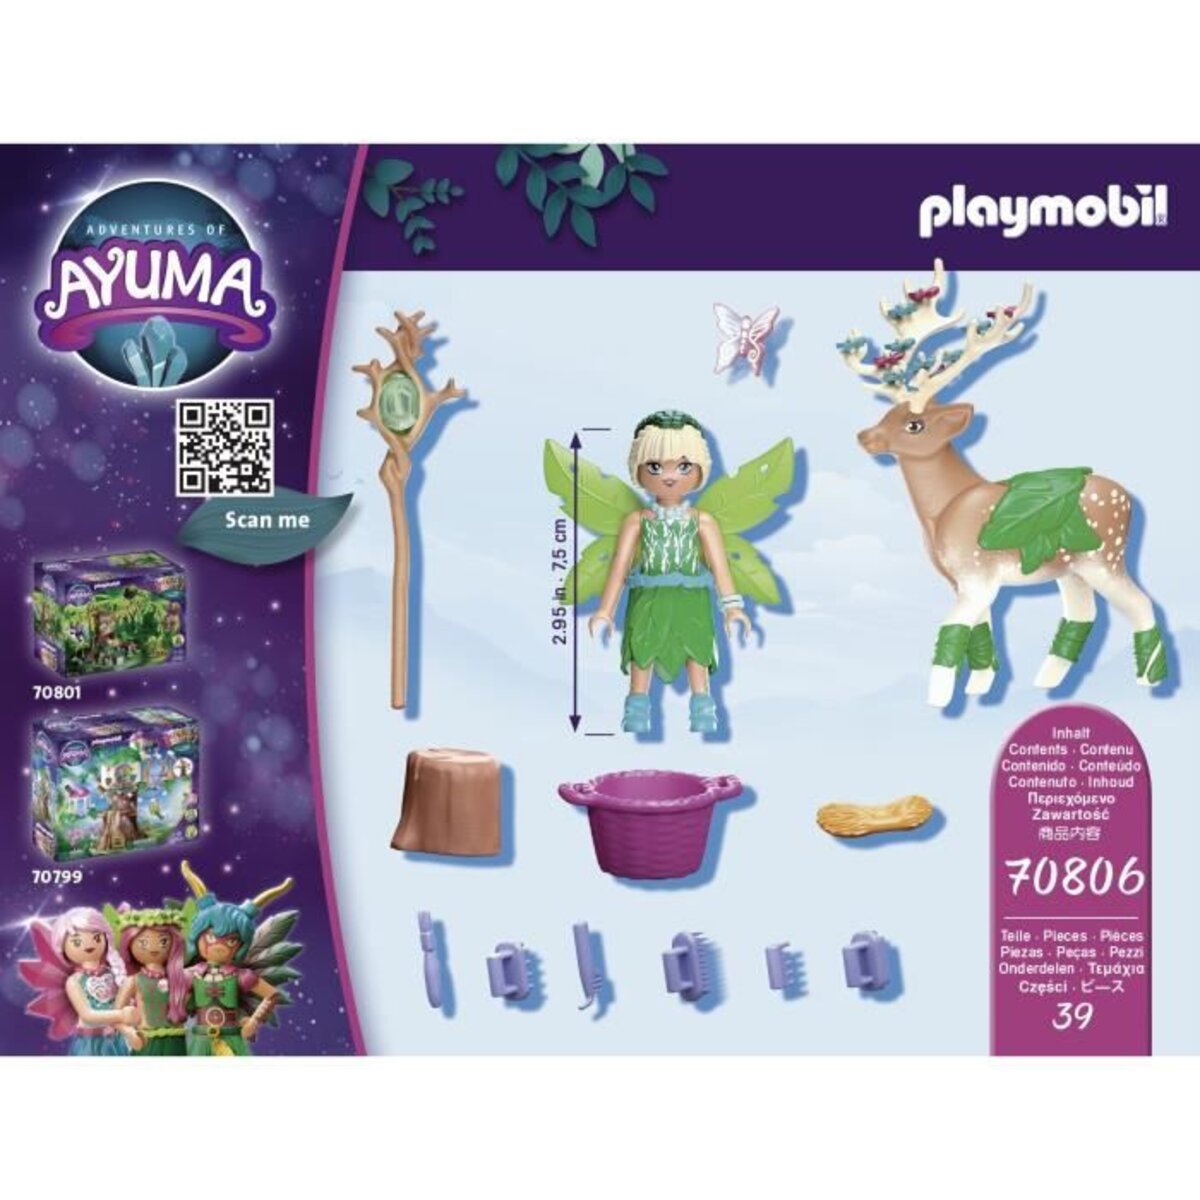 Playmobil - 70806 - Ayuma - Forest Fairy avec animal préféré